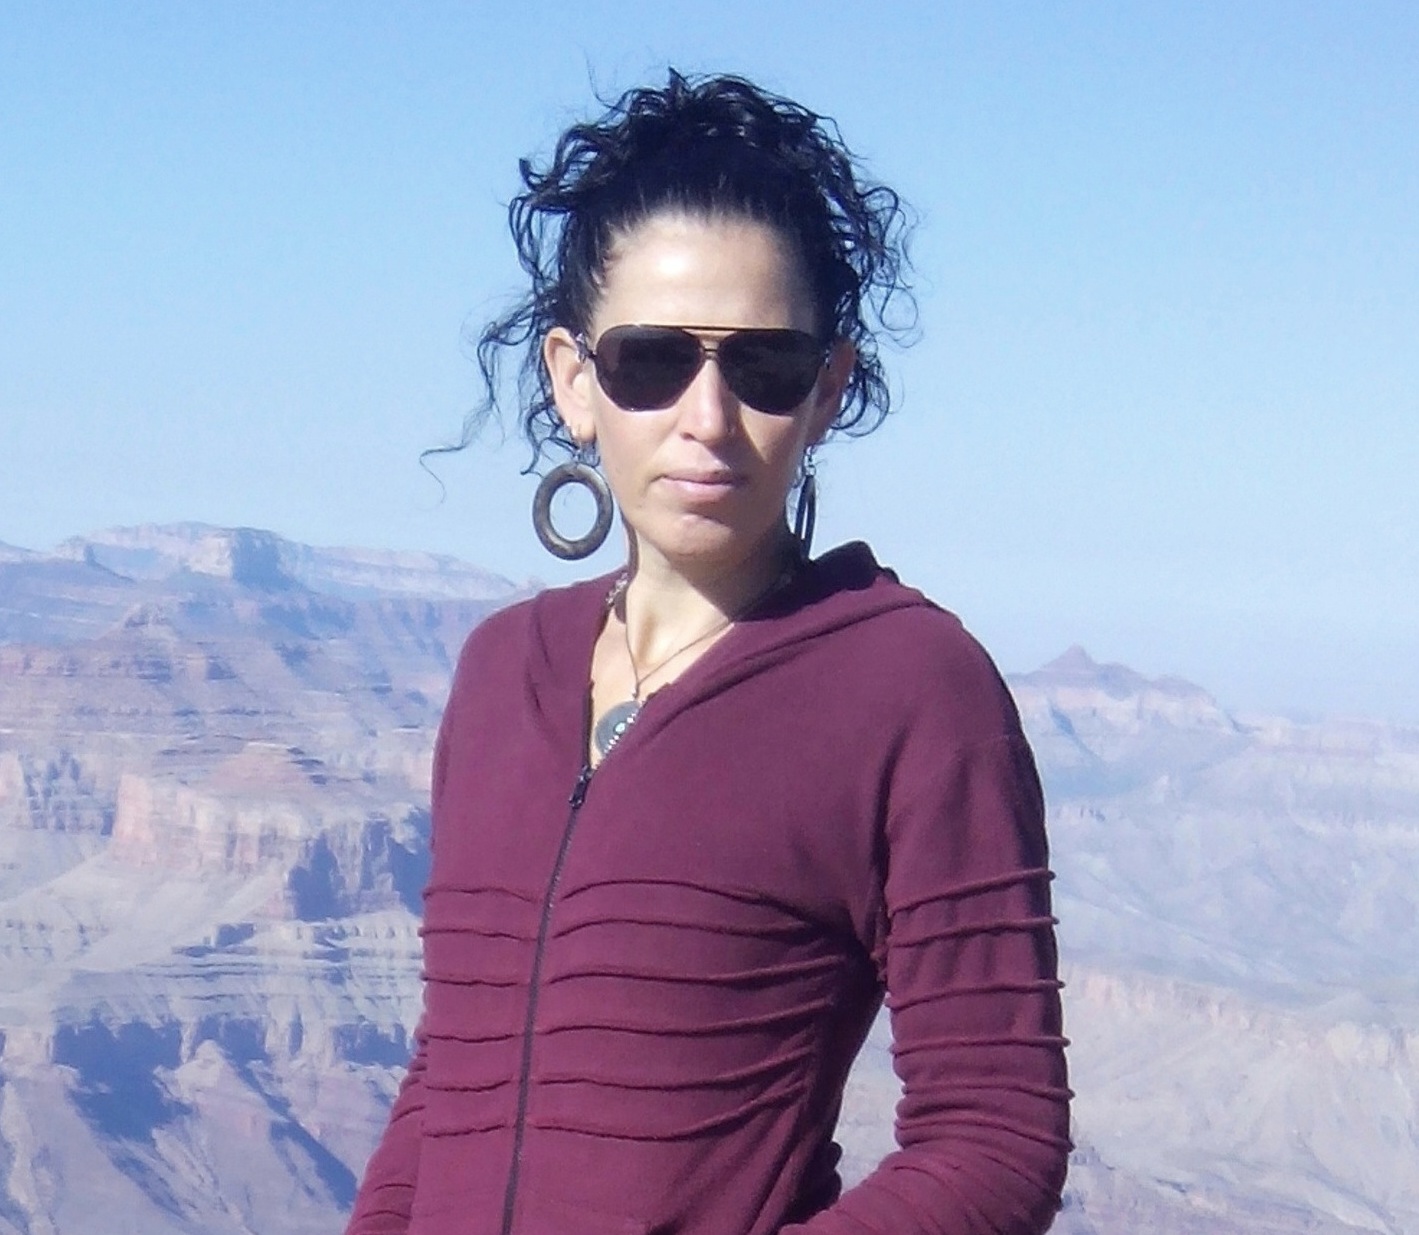 Mira Arad at the Grand Canyon.